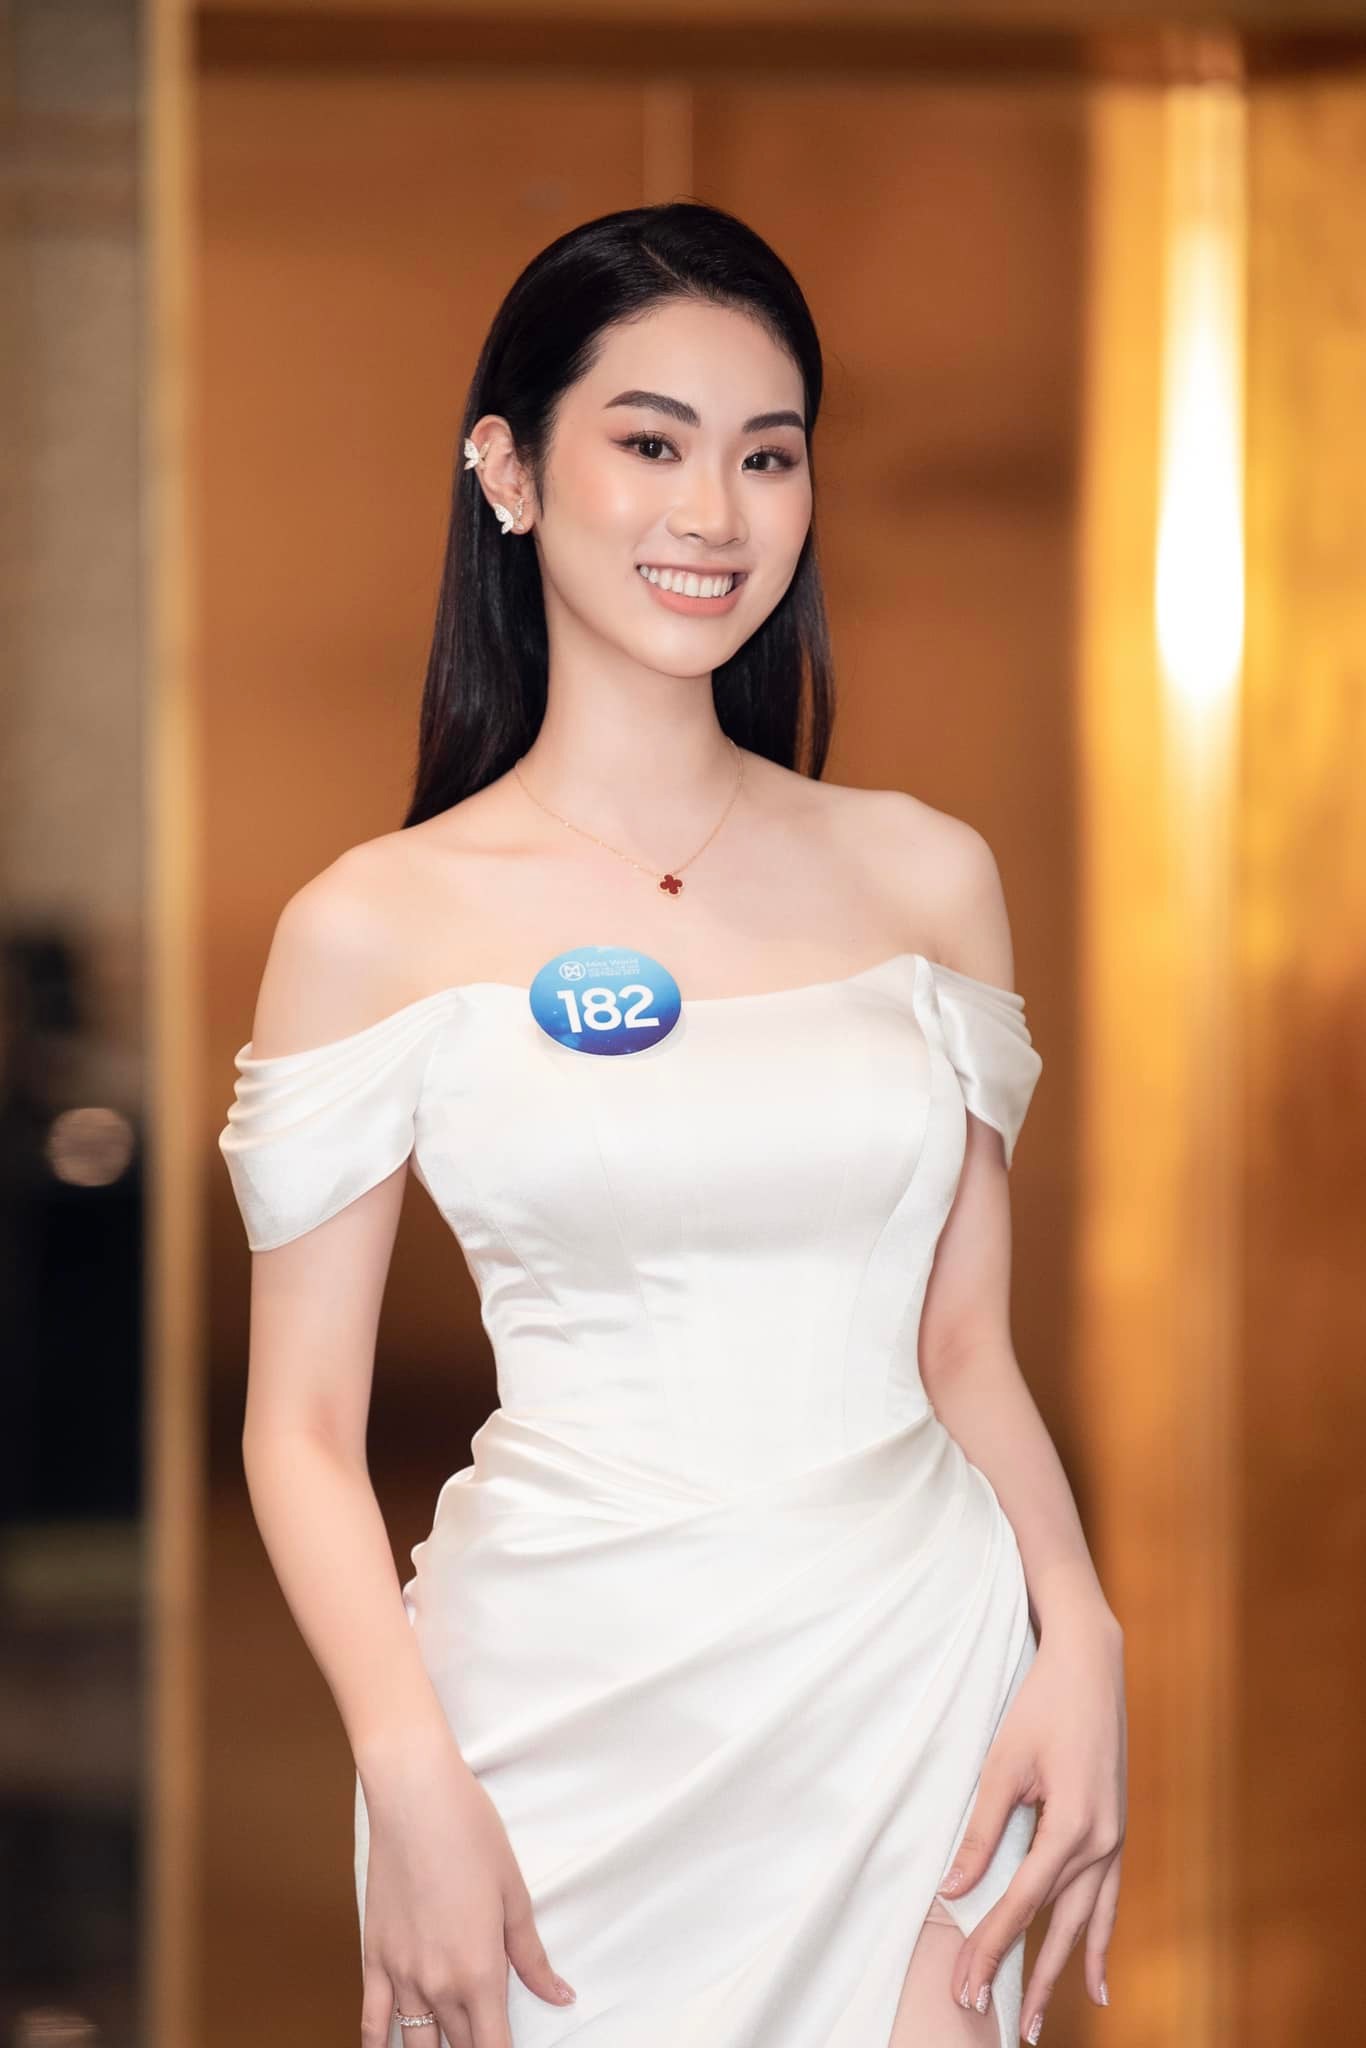 Nhan sắc xinh đẹp, quyến rũ của nữ sinh Ngoại giao cao 1,74 m vào thẳng Top 20 chung kết Miss World Vietnam 2022 - Ảnh 5.